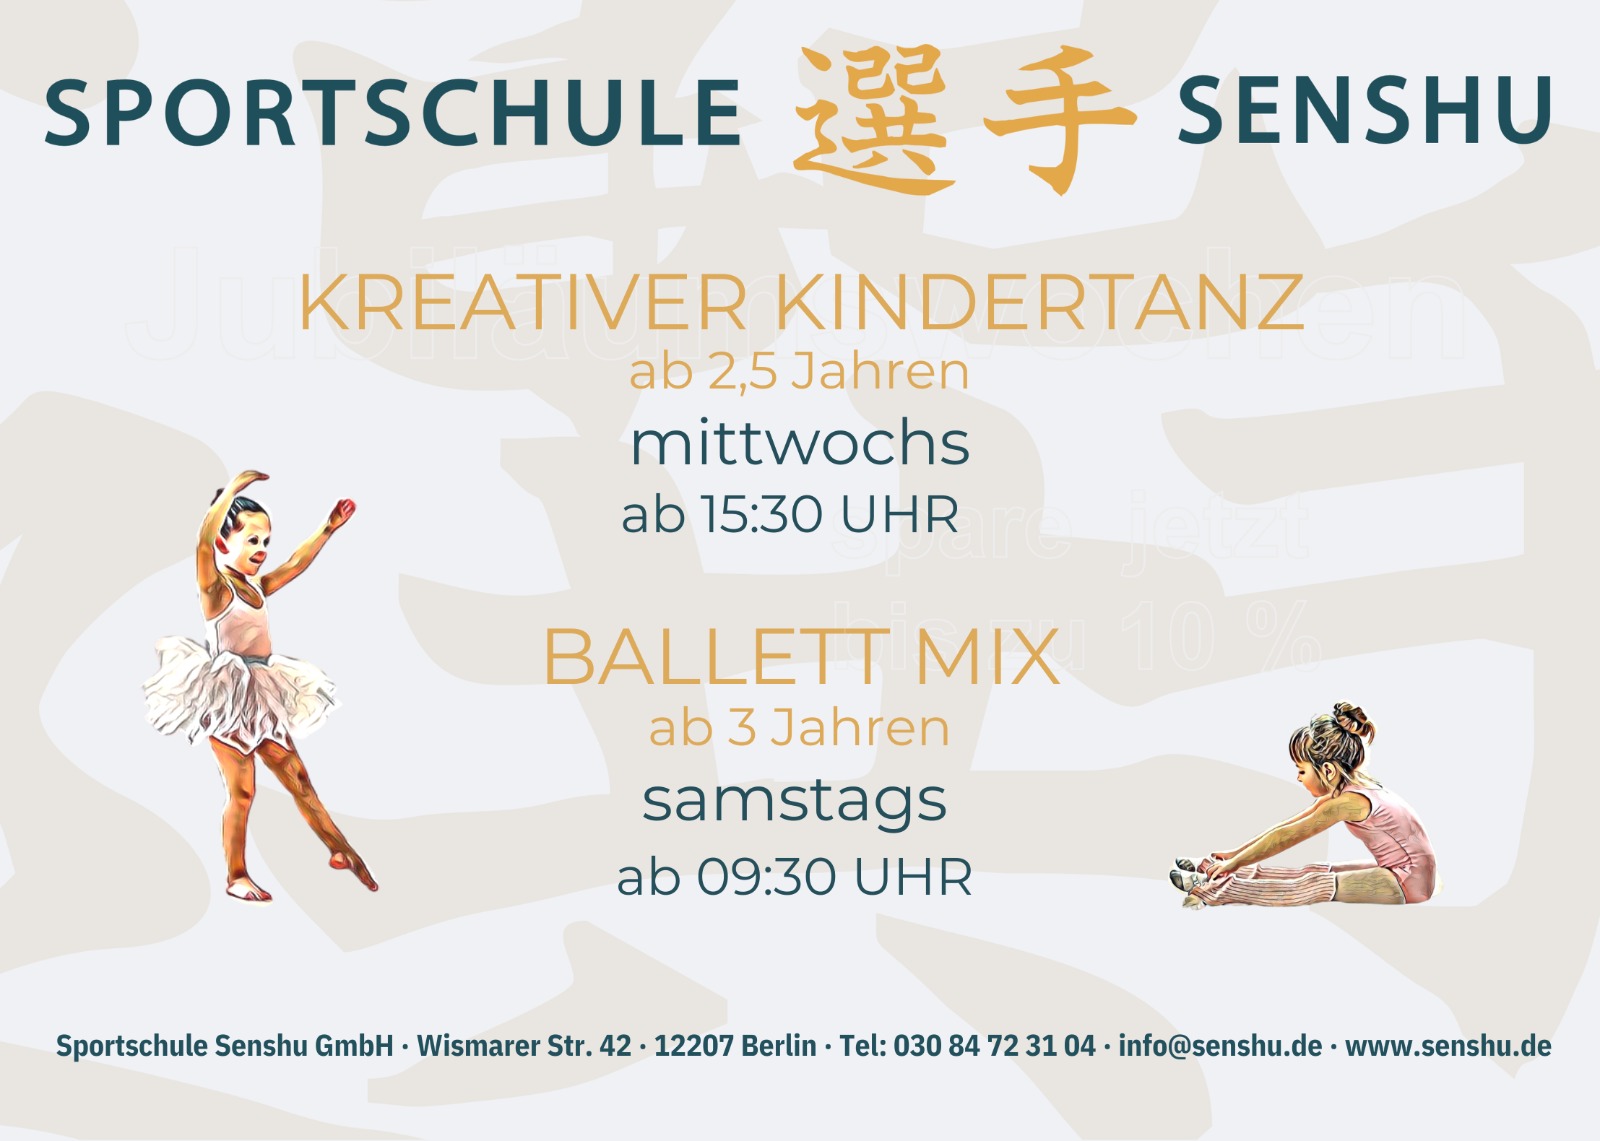 Senshu Angebot: Kreativer Kindertanz & Ballett Mix